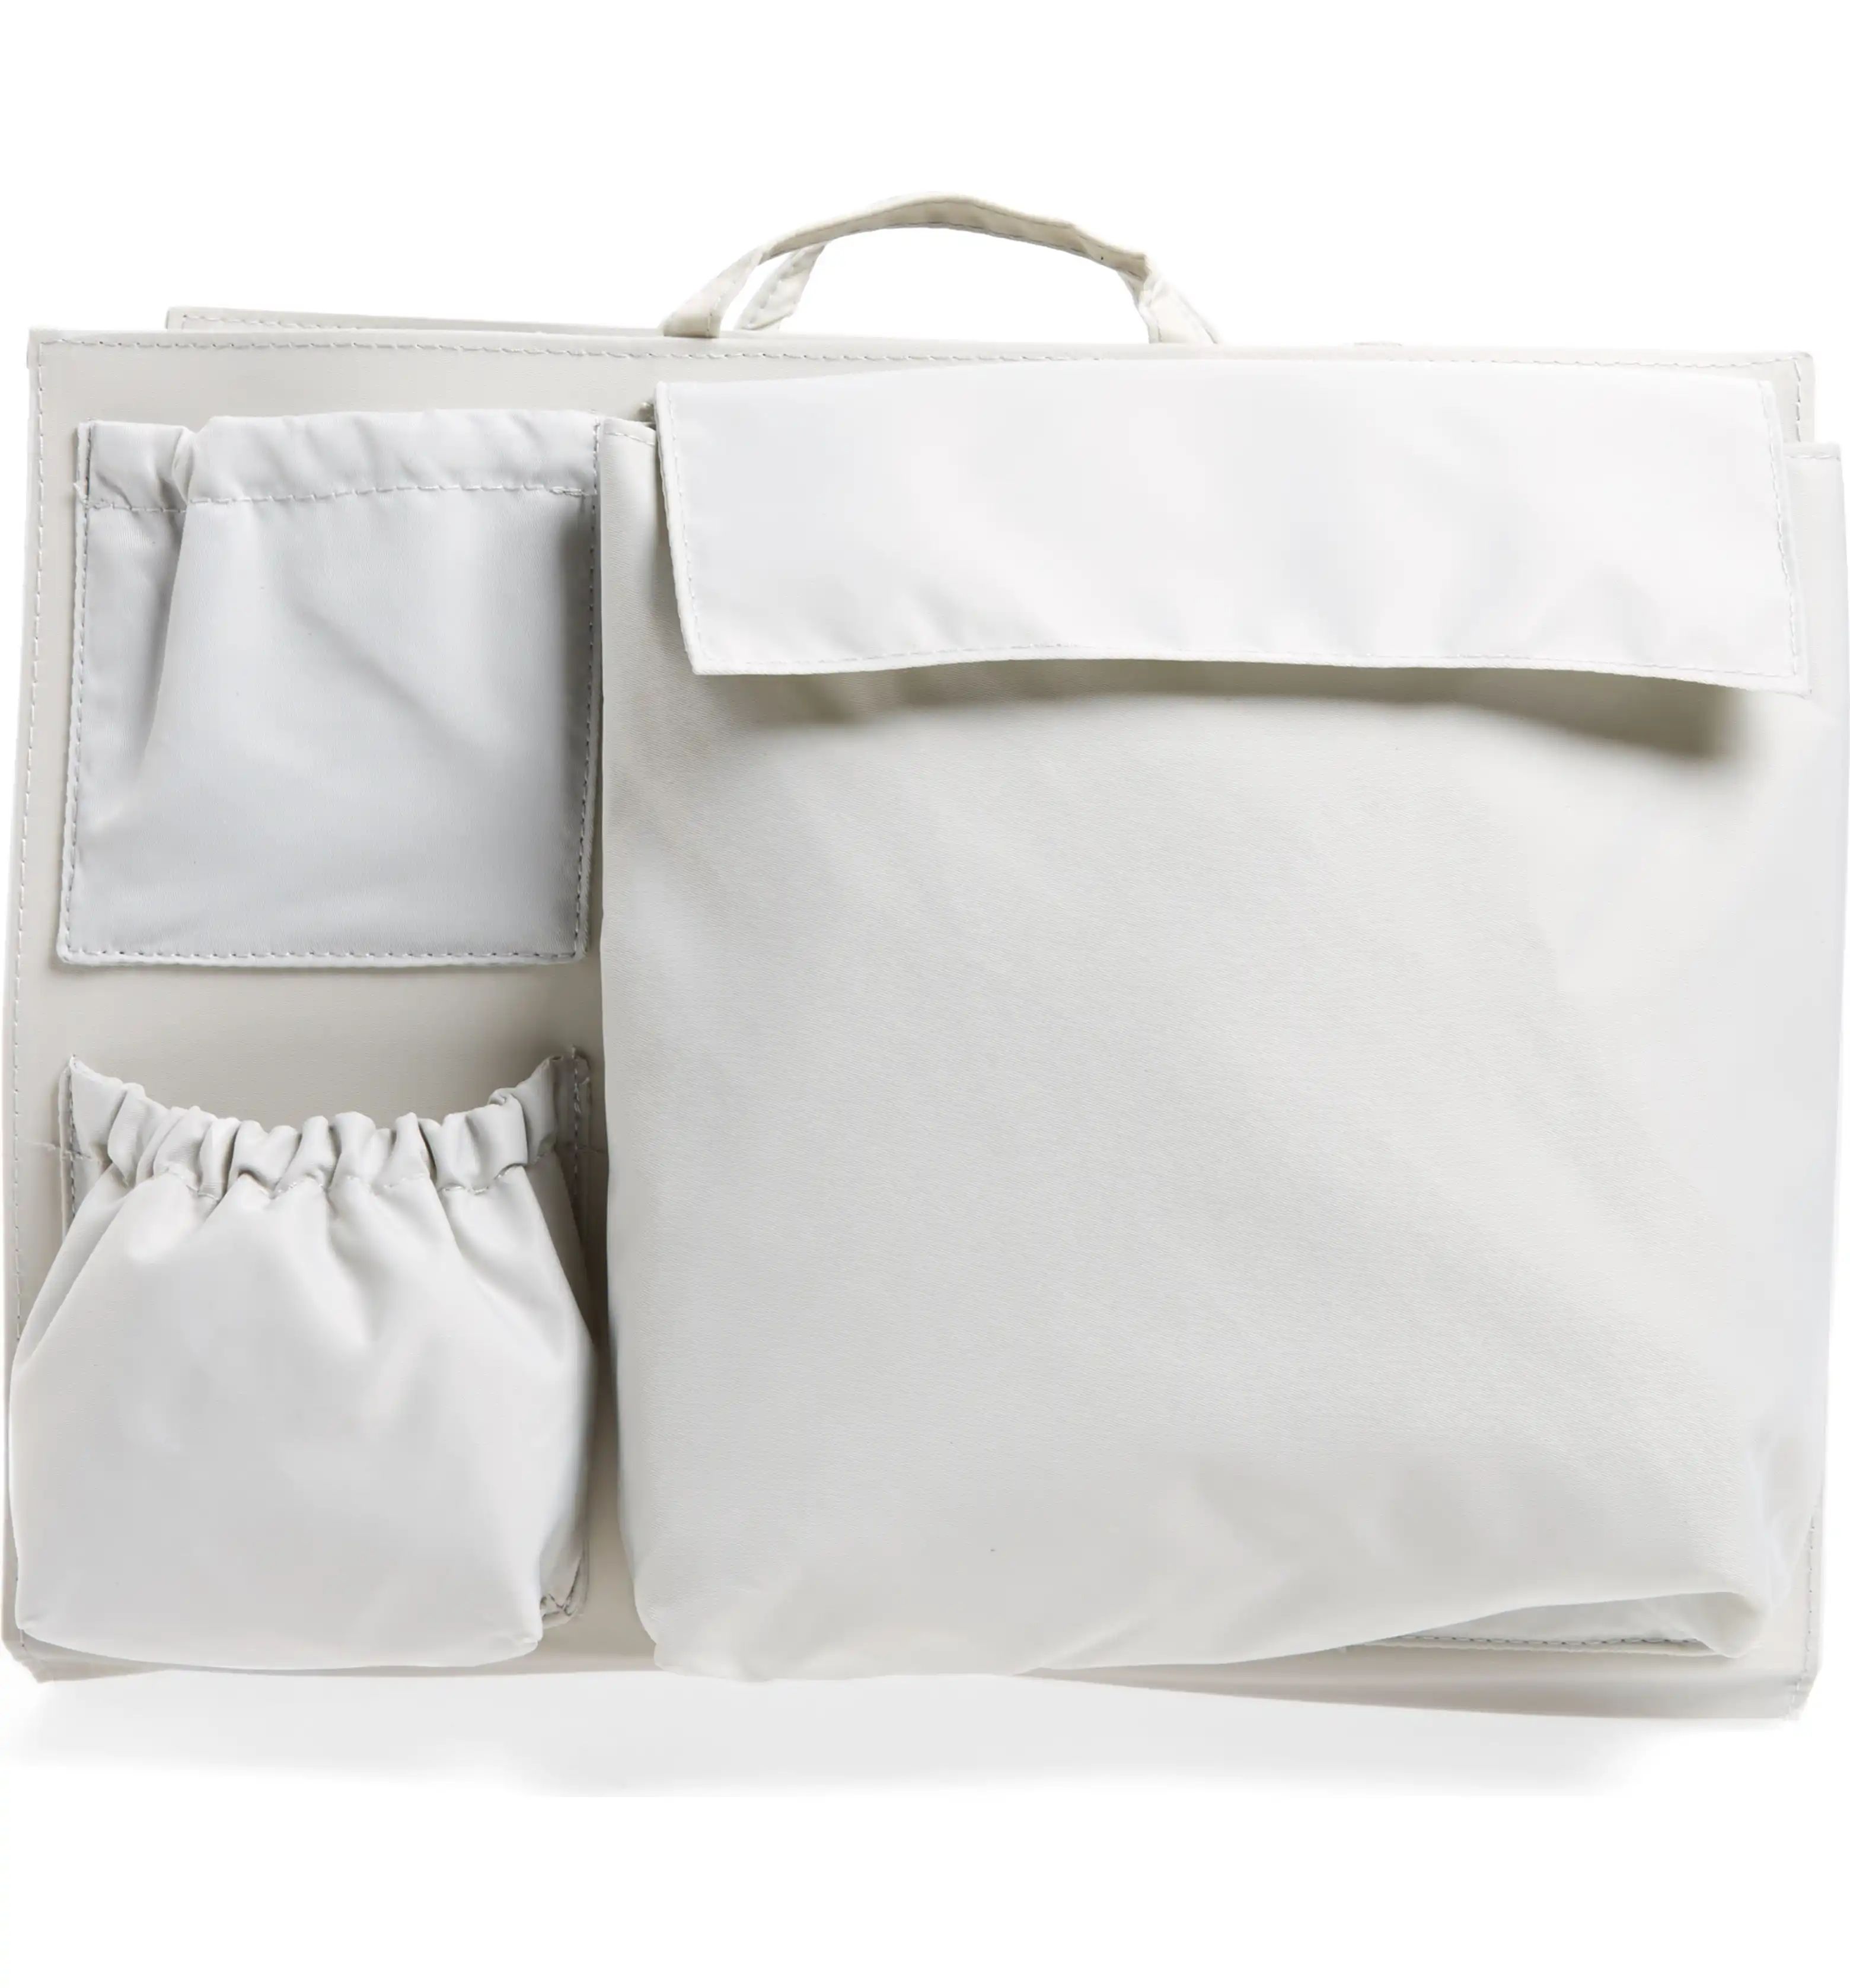 Organization Handbag Insert | Nordstrom